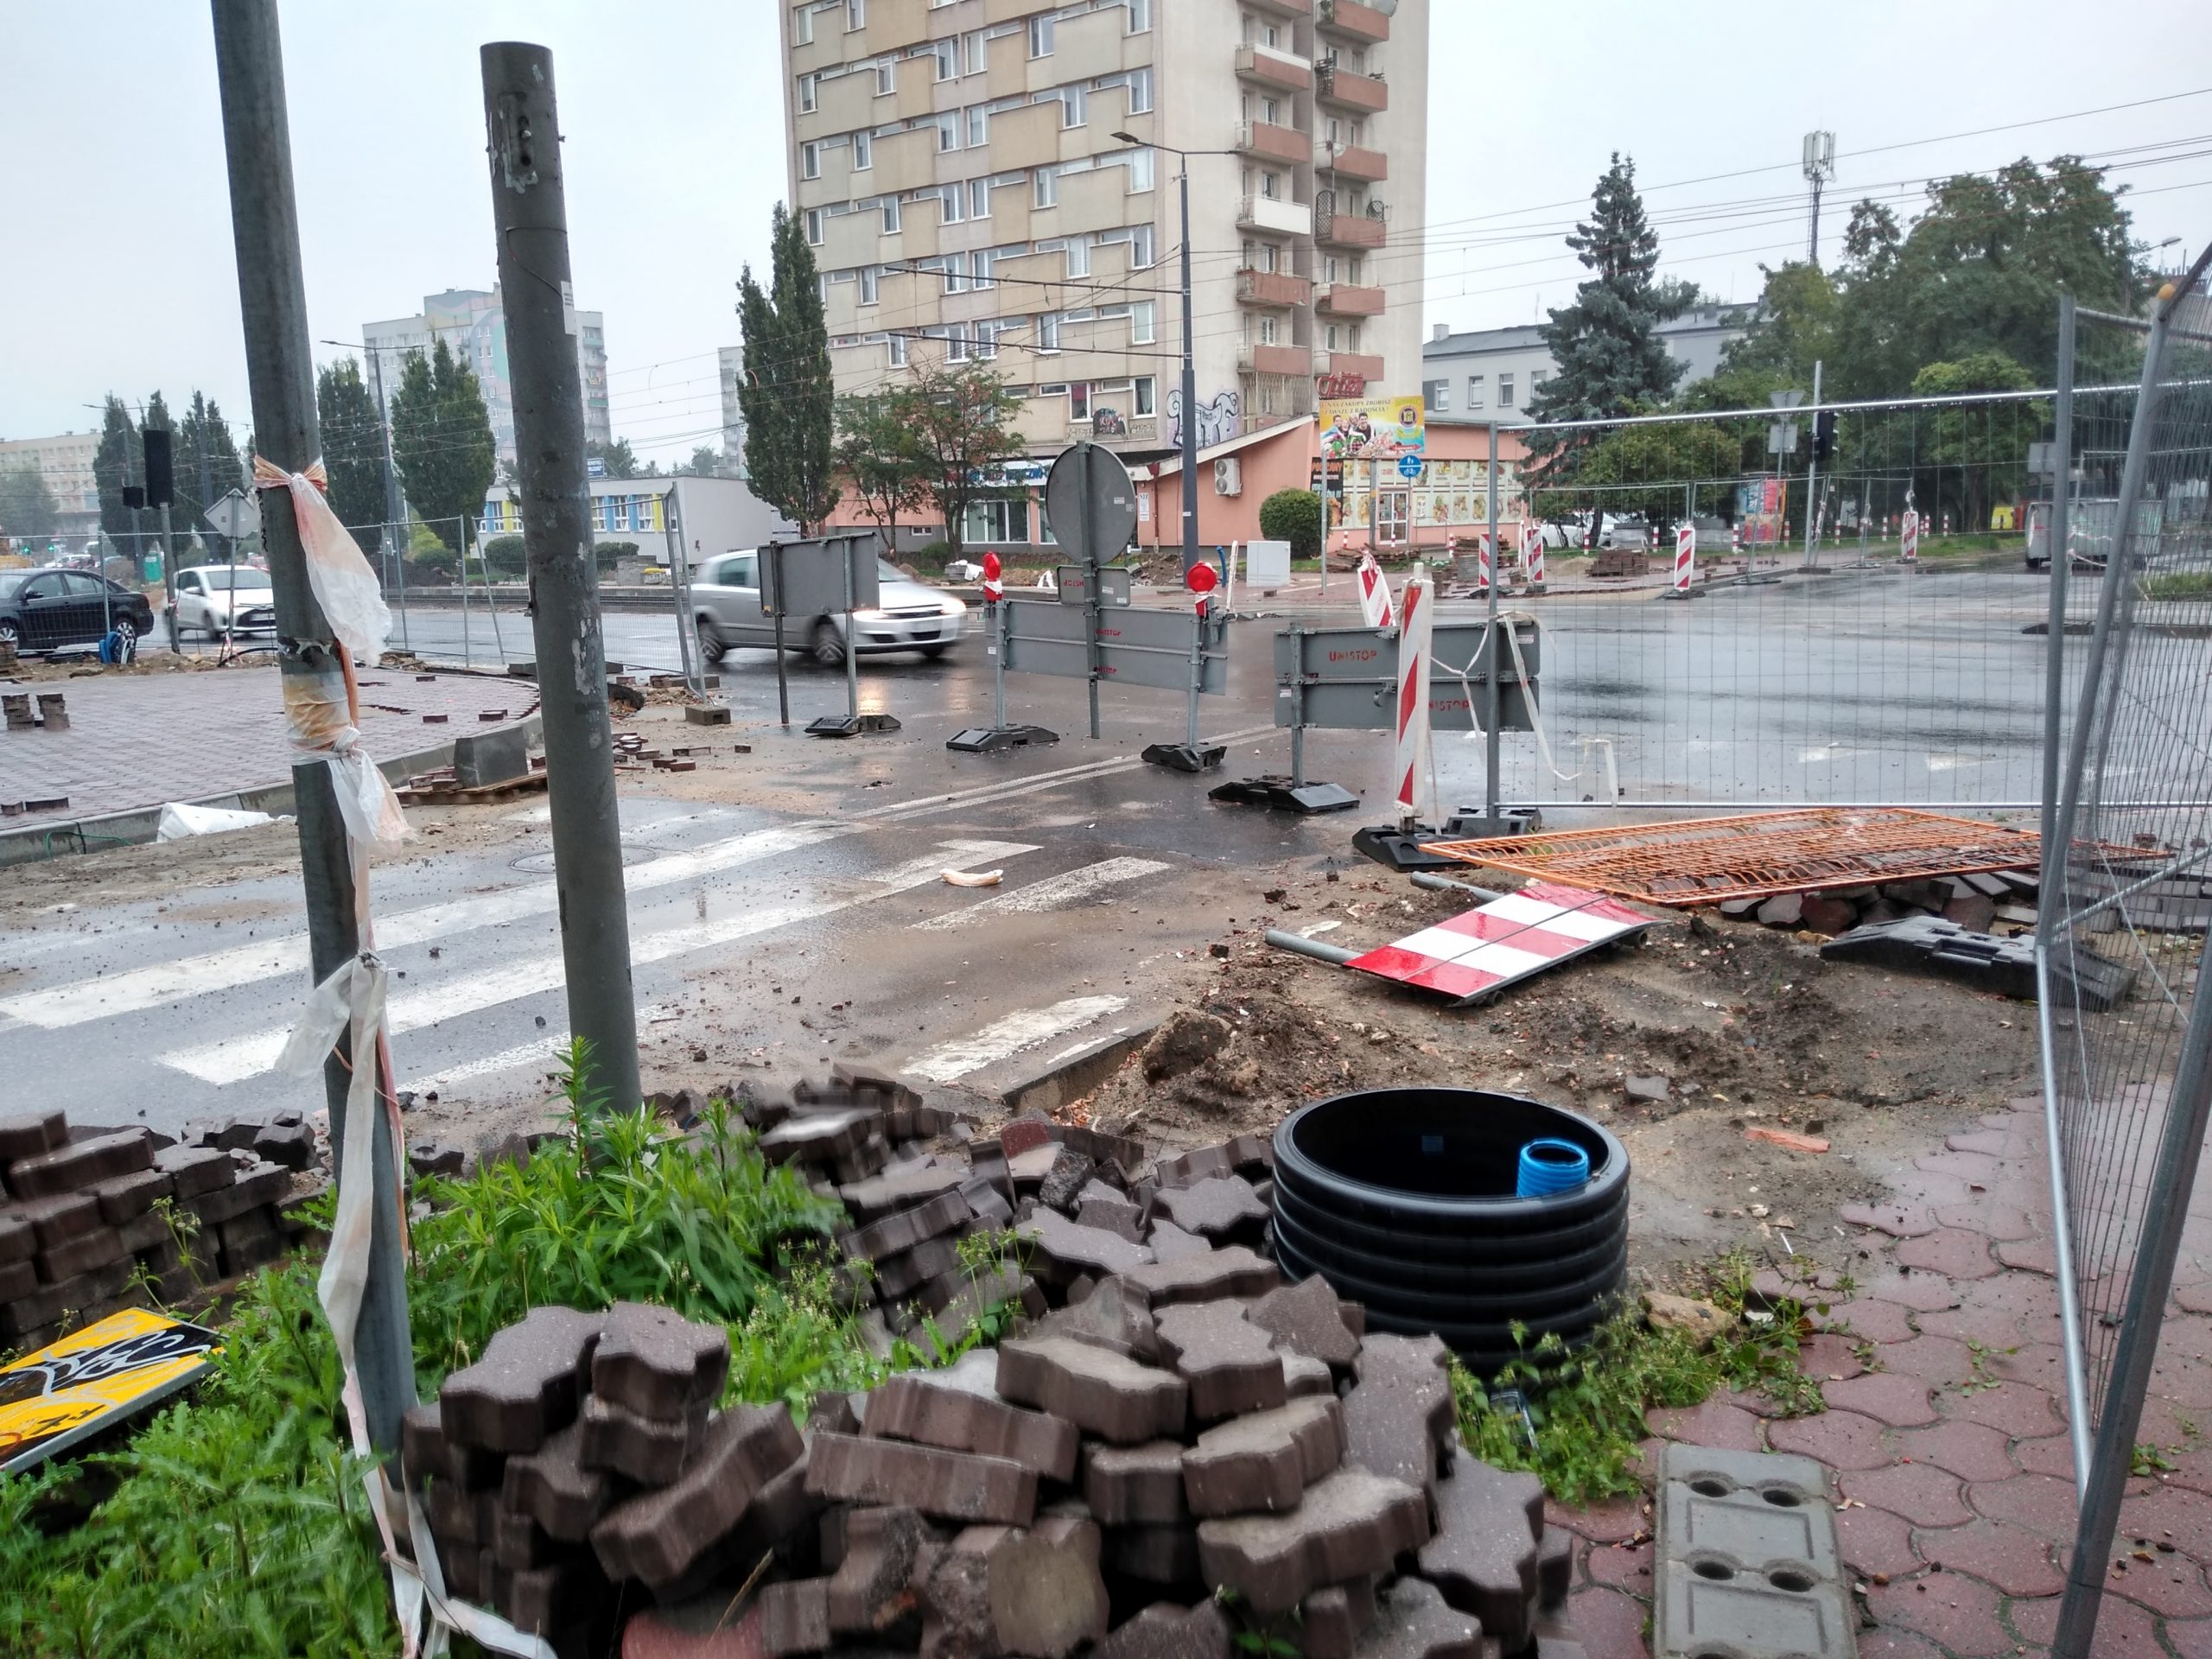 Skrzyżowanie ulicy Jasnogórskiej z aleją Kościuszki ciągle niedrożne. Ma być całkowicie przejezdne na początku września 1